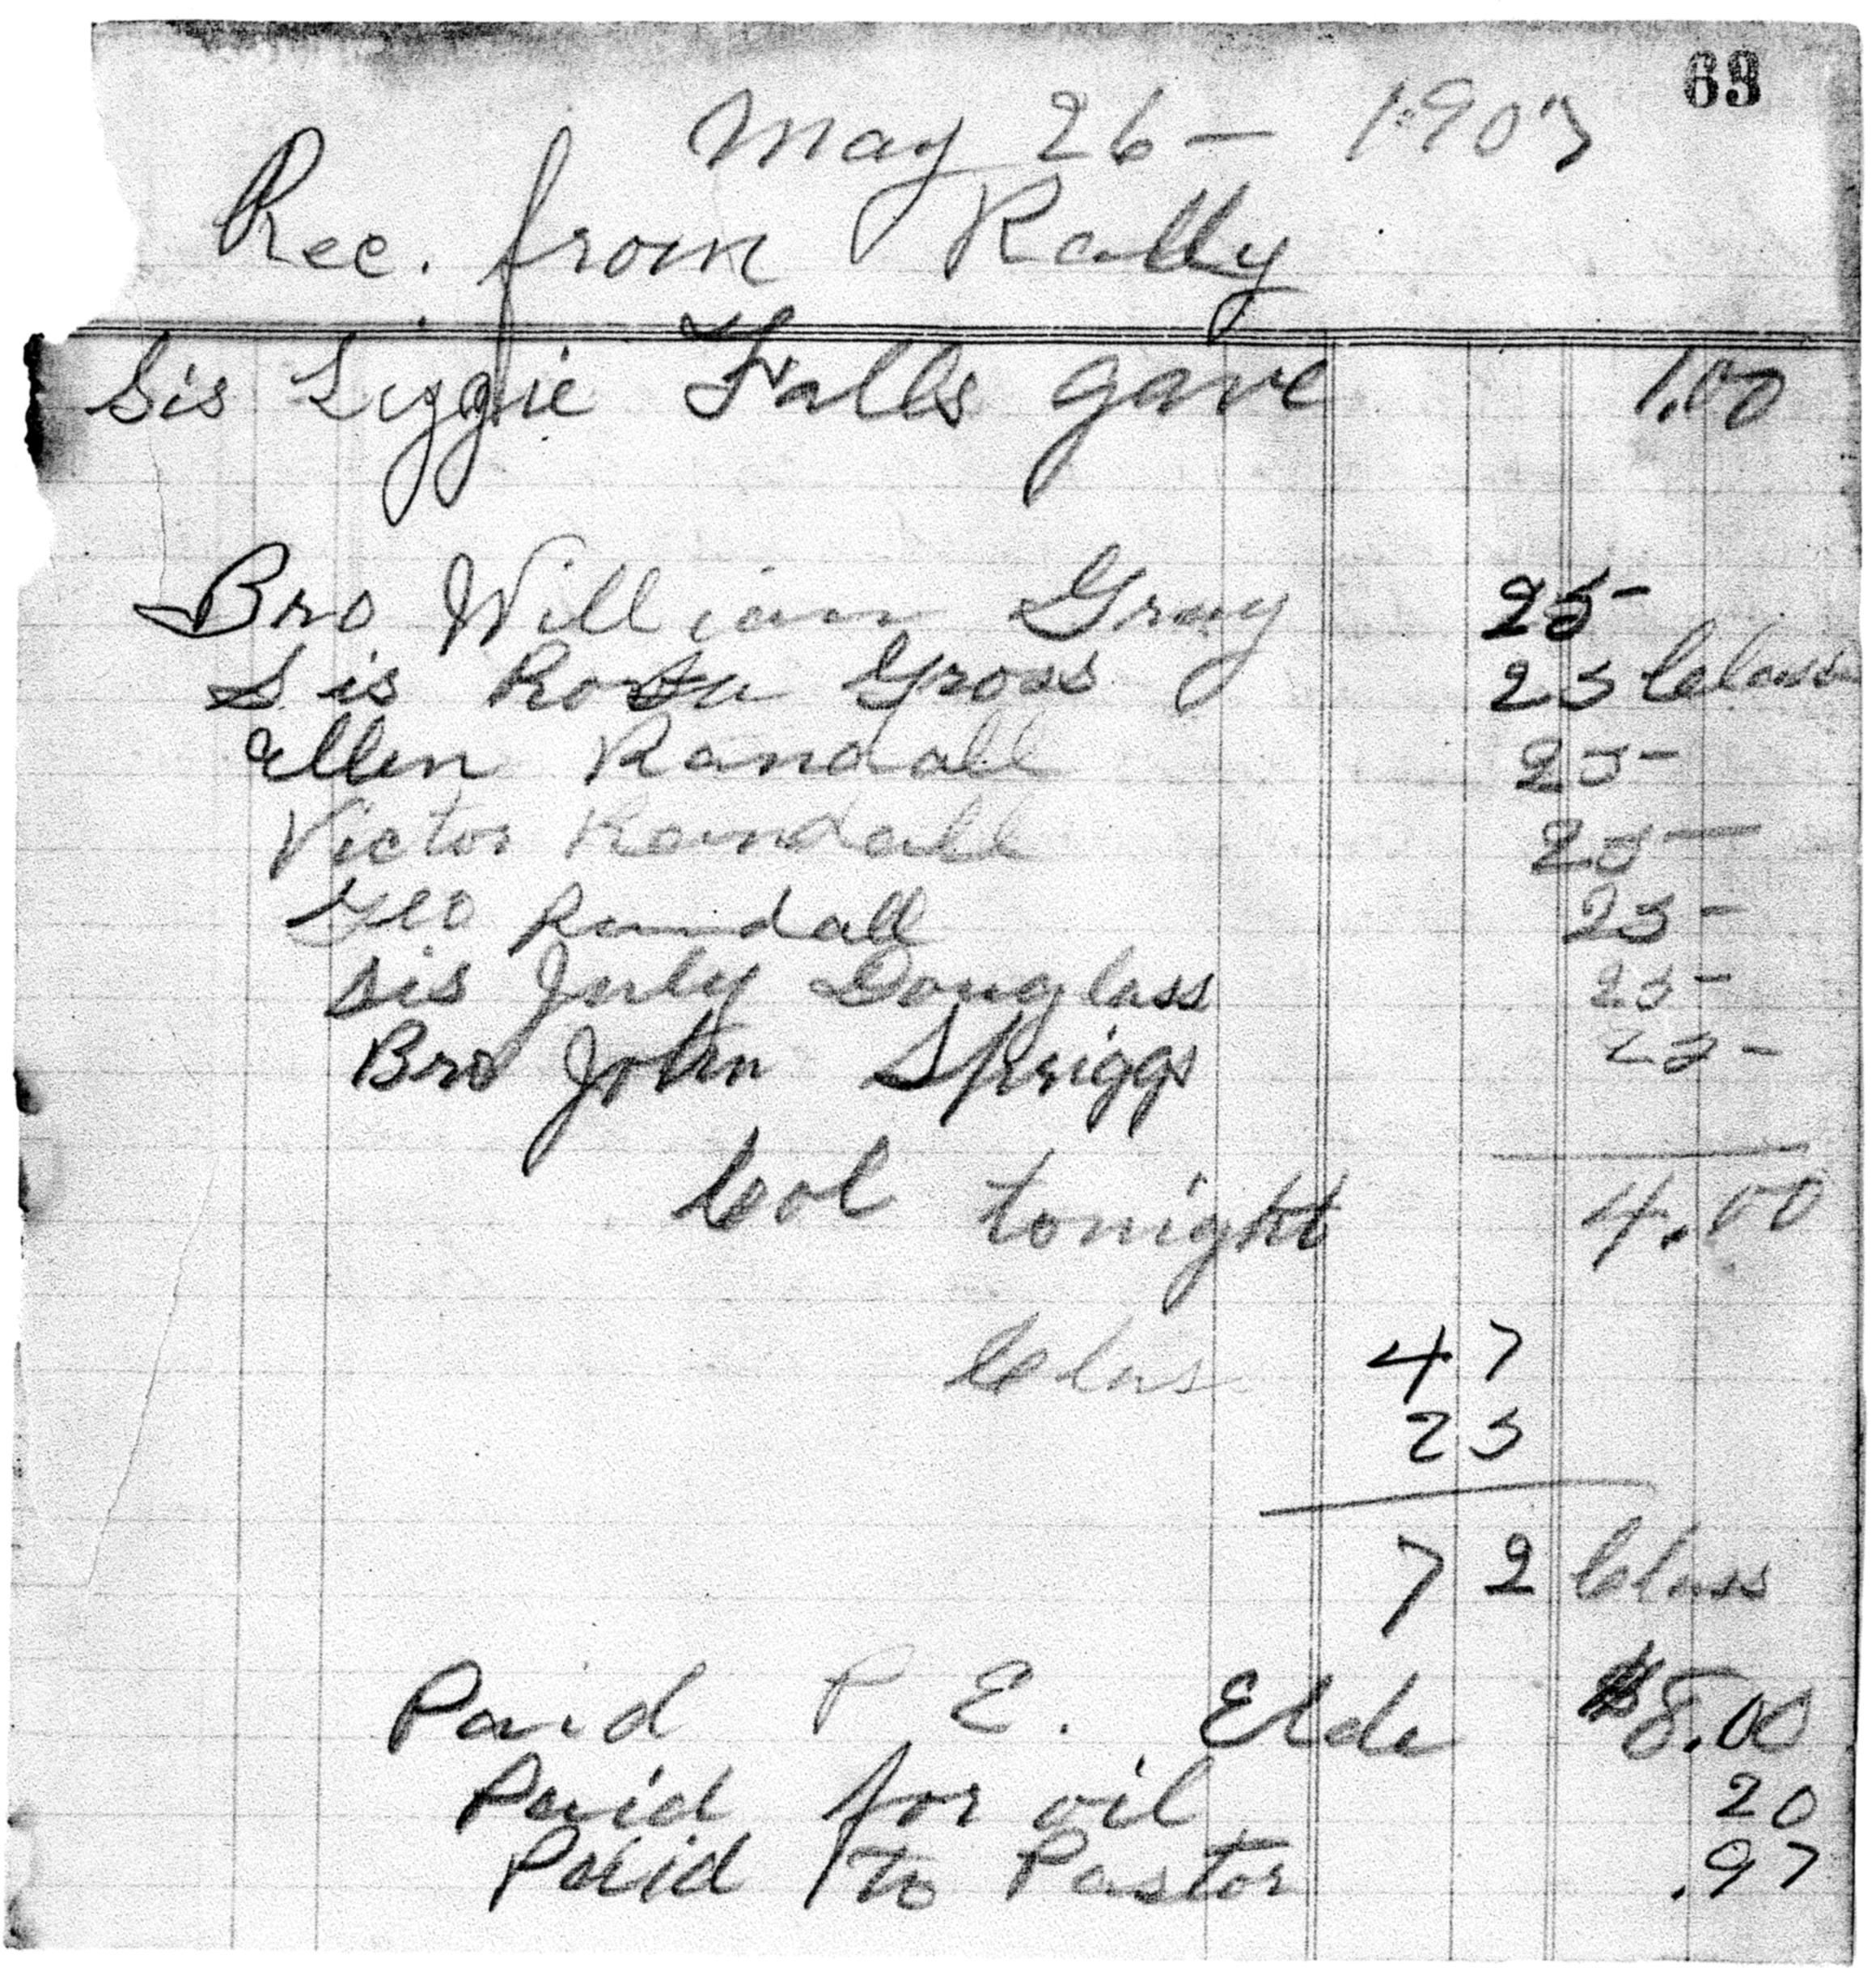 Treasurer's Report May 1903